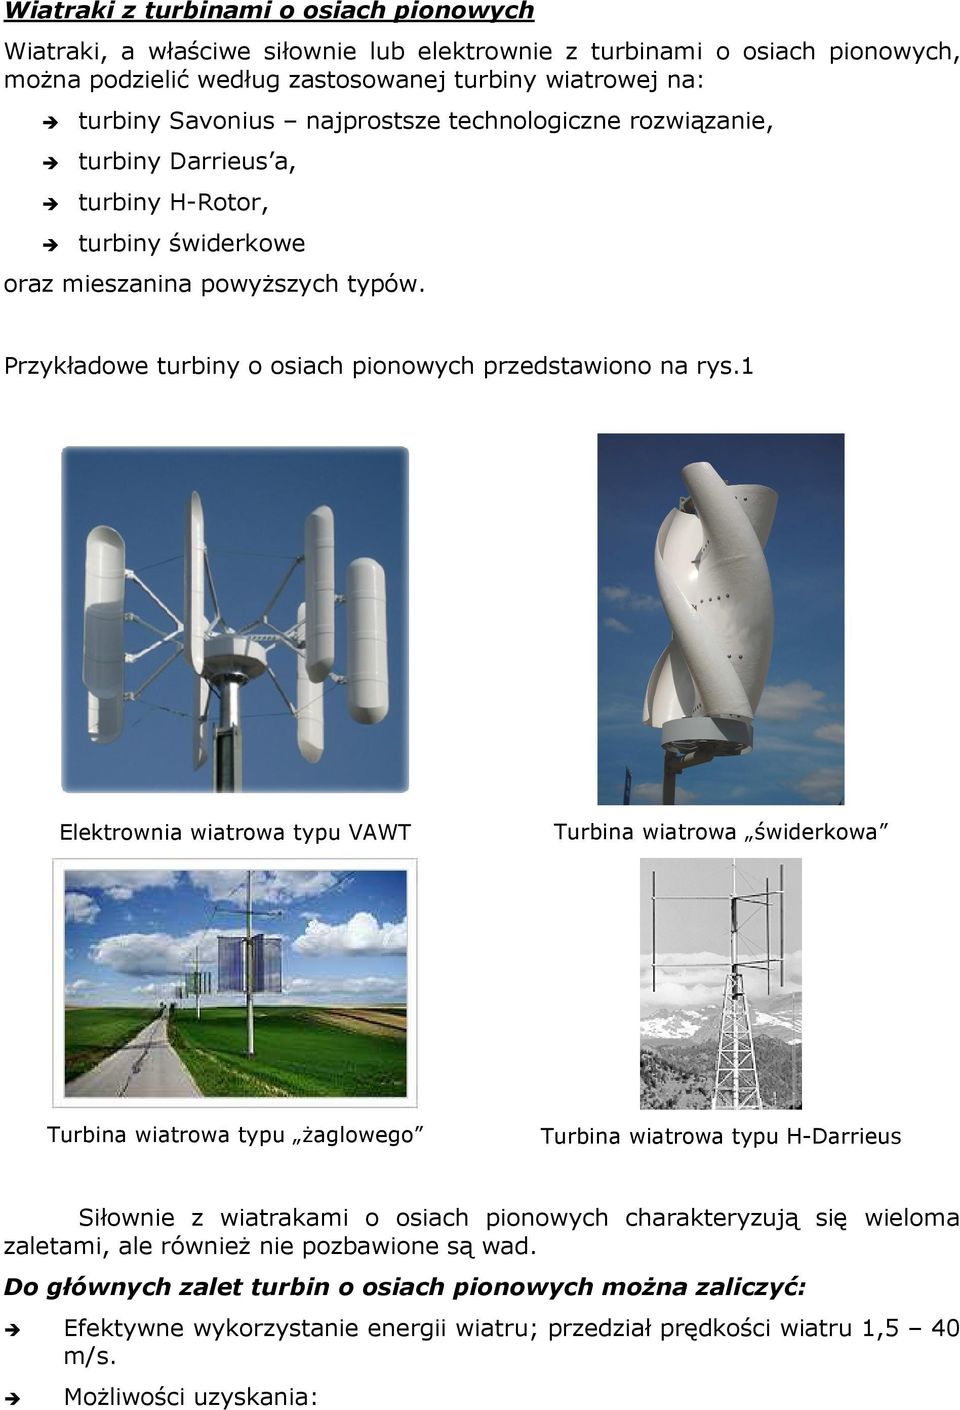 1 Elektrownia wiatrowa typu VAWT Turbina wiatrowa świderkowa Turbina wiatrowa typu żaglowego Turbina wiatrowa typu H-Darrieus Siłownie z wiatrakami o osiach pionowych charakteryzują się wieloma